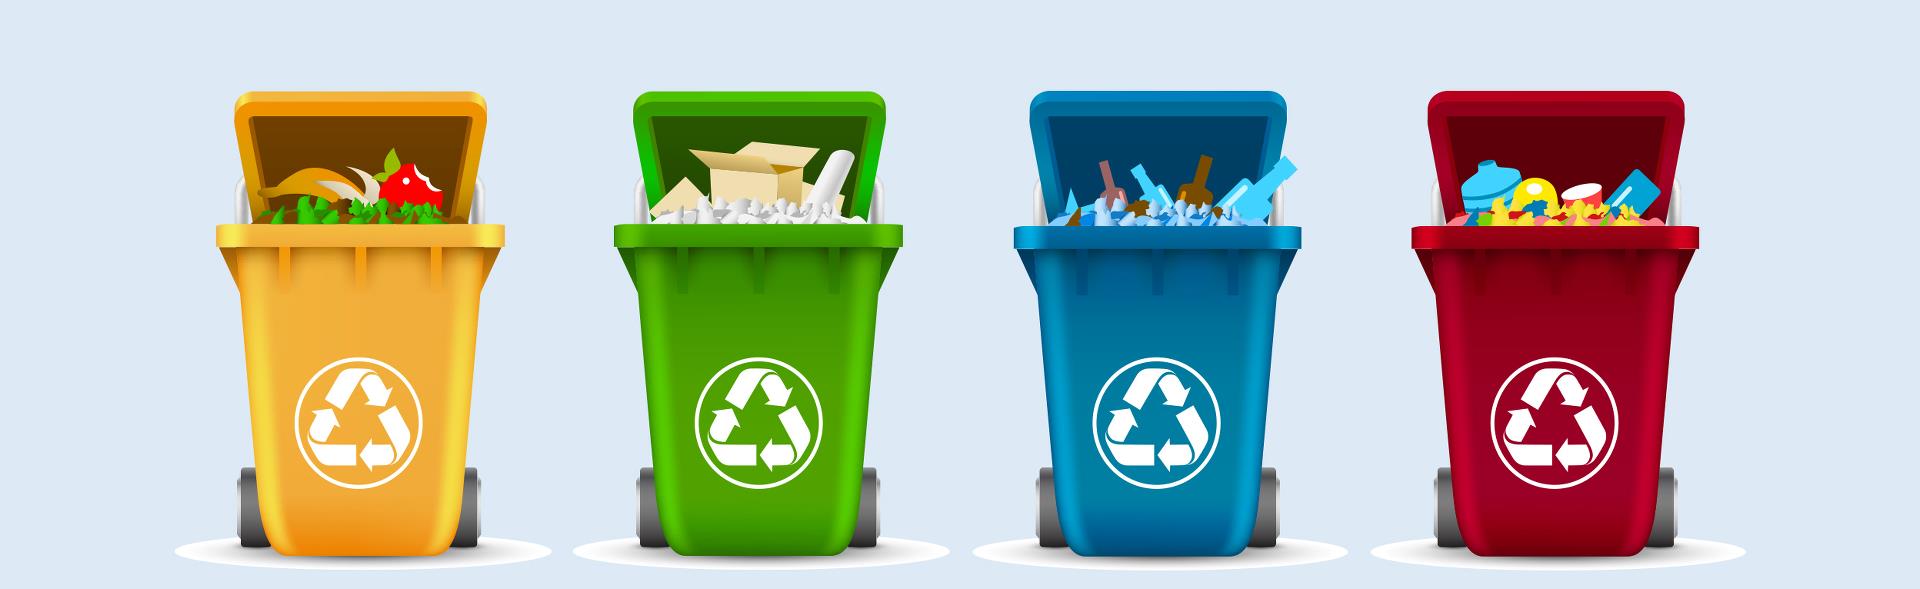 Grafisk tegning af affaldsbeholdere i forskellige farver til sortering af forskelligt affald